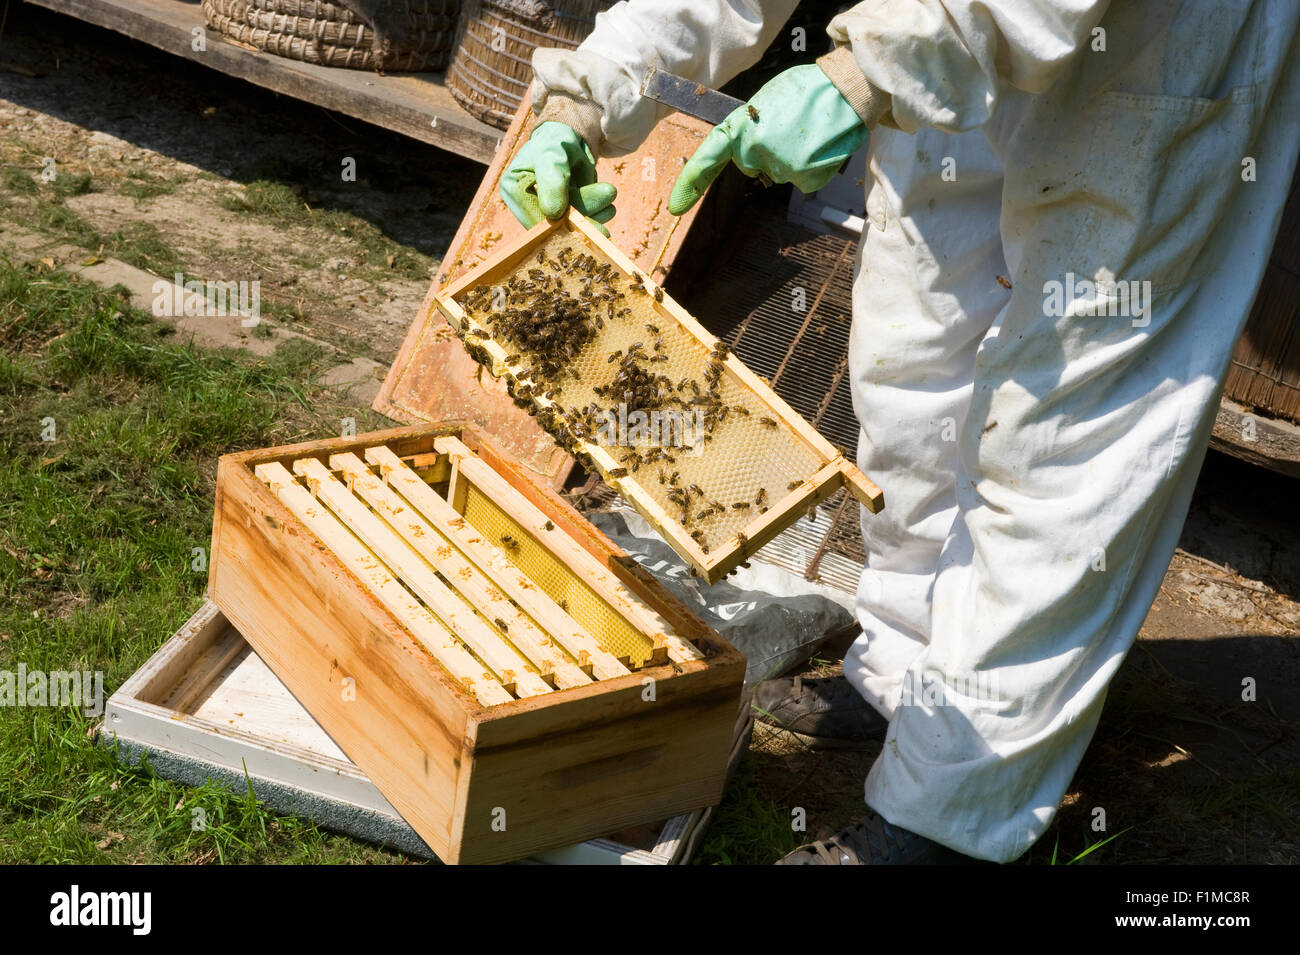 Eibergen, Pays-Bas - Aug 08, 2015 : Un contrôle est apiculteur la trame d'un rayon de miel et le port de vêtements de protection Banque D'Images